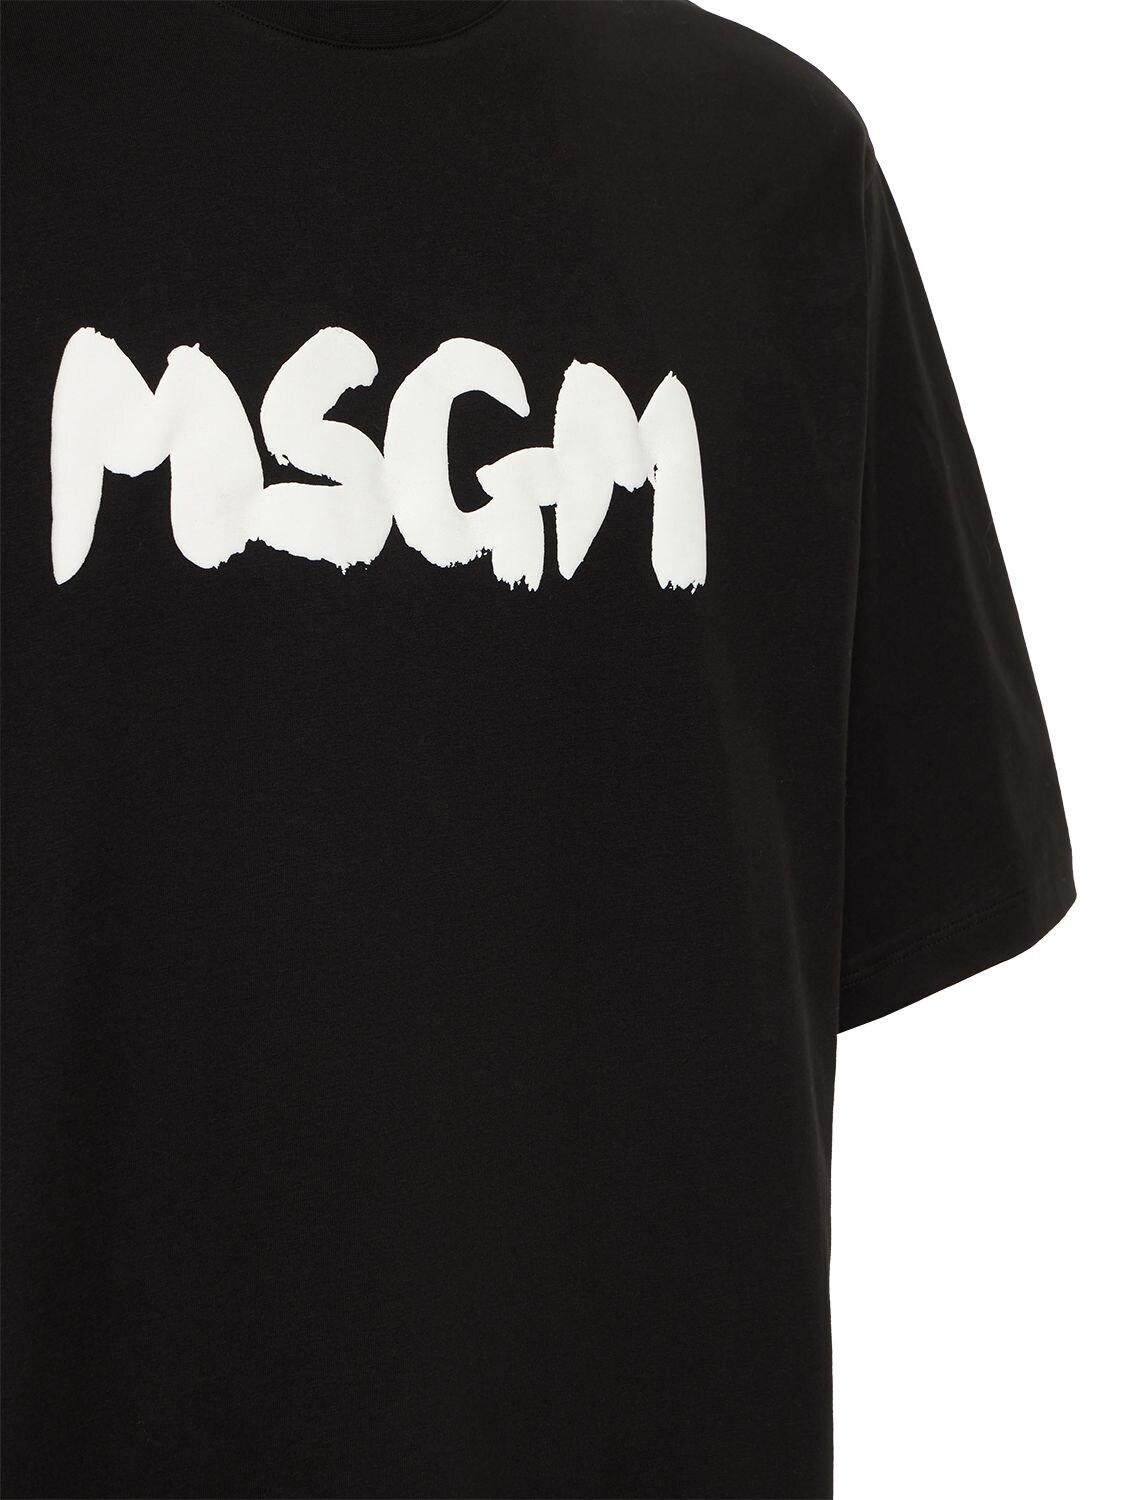 Homme T-shirts T-shirts MSGM T-shirt à logo imprimé Coton MSGM pour homme en coloris Blanc 